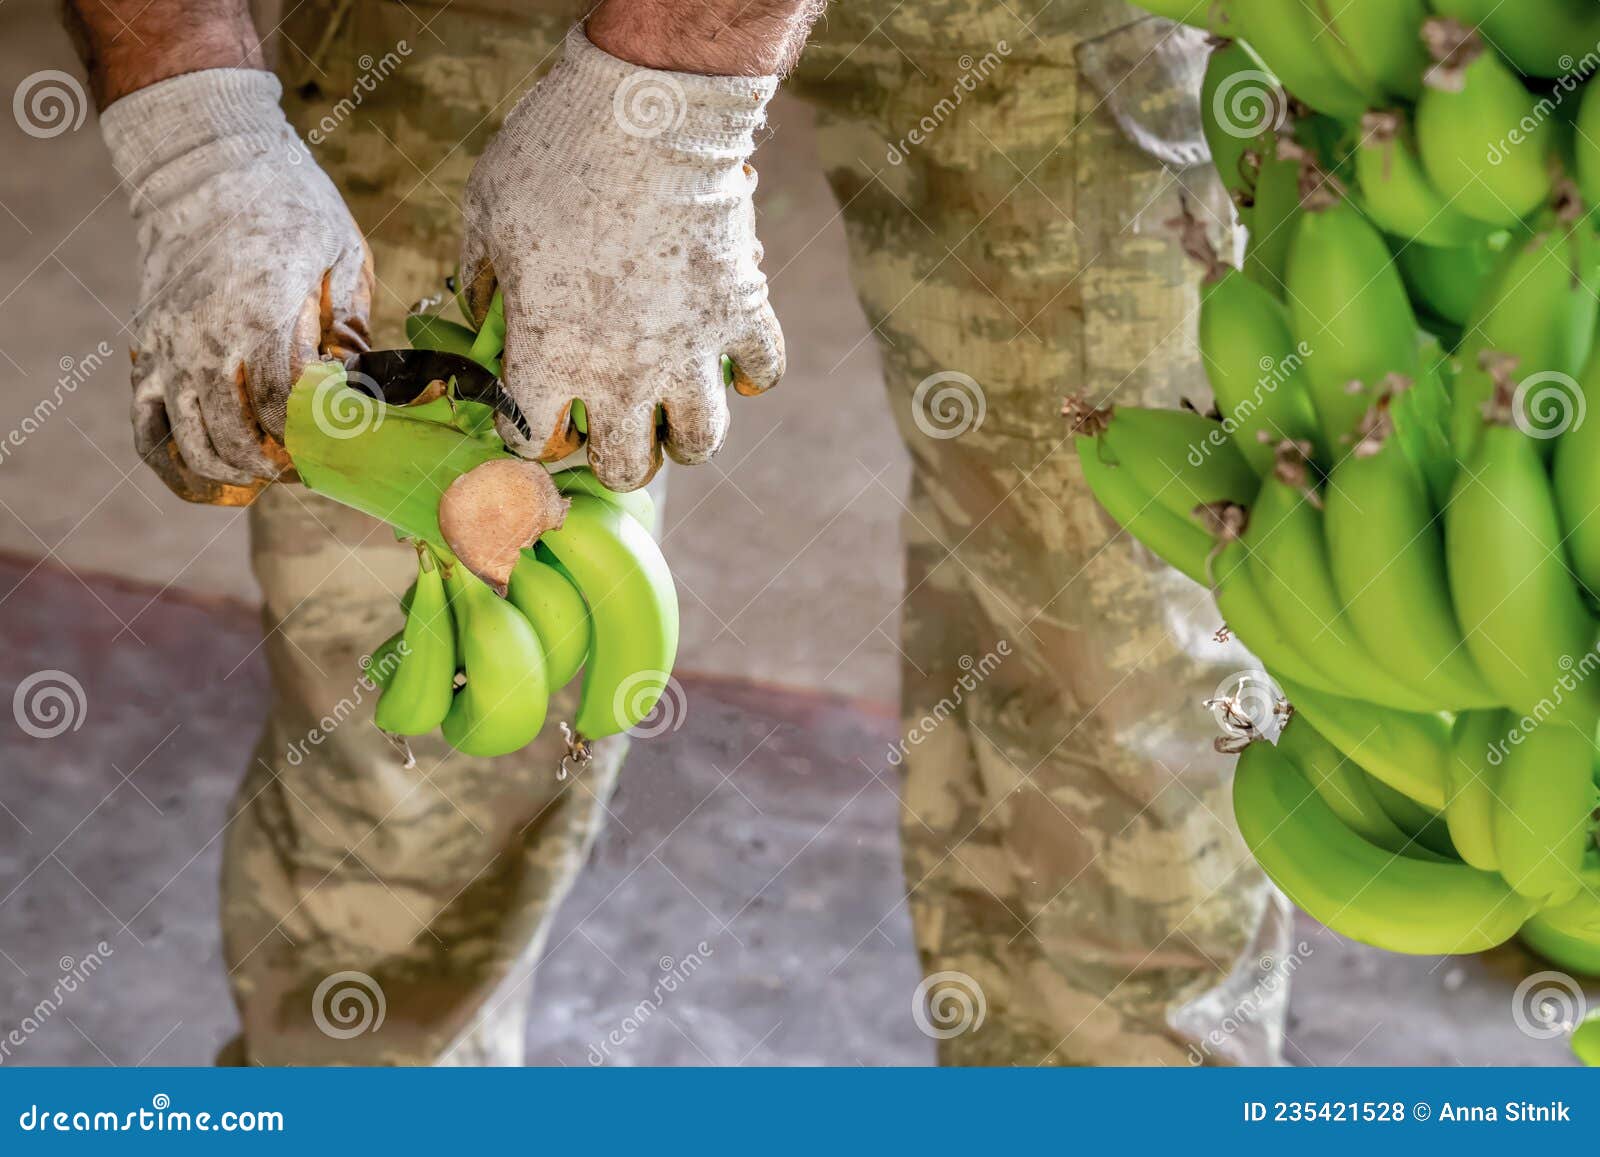 Hombre Guantes De Trabajo Tipo Bananas. Preparación De Plátanos Al Mayor. Foto archivo - Imagen de grande, colgante: 235421528